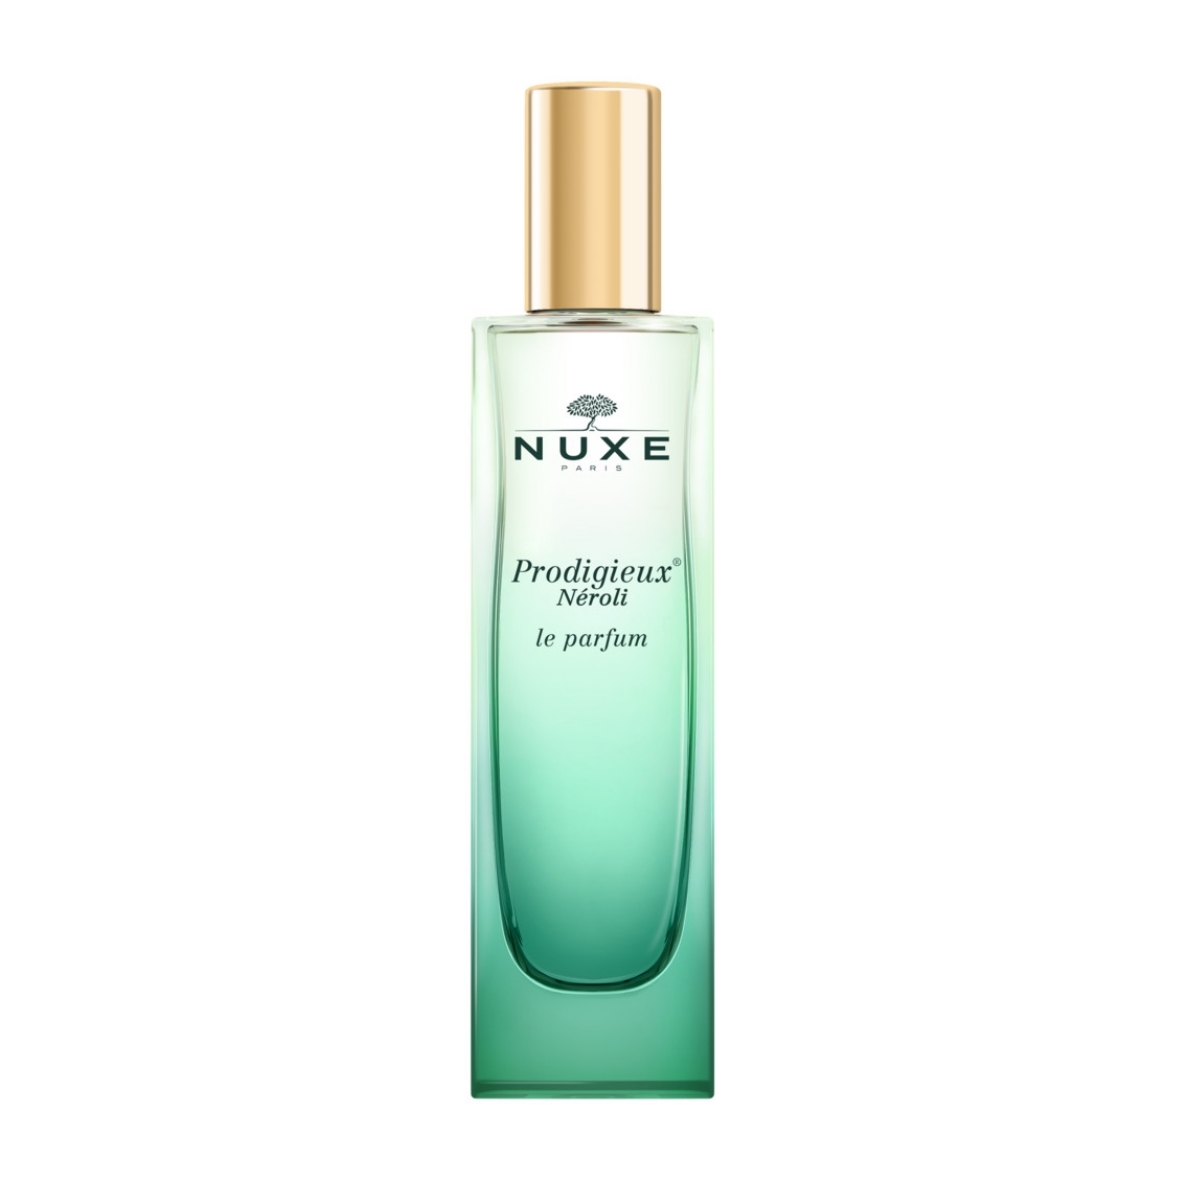 Prodigieux Néroli Eau de Parfum de Nuxe.